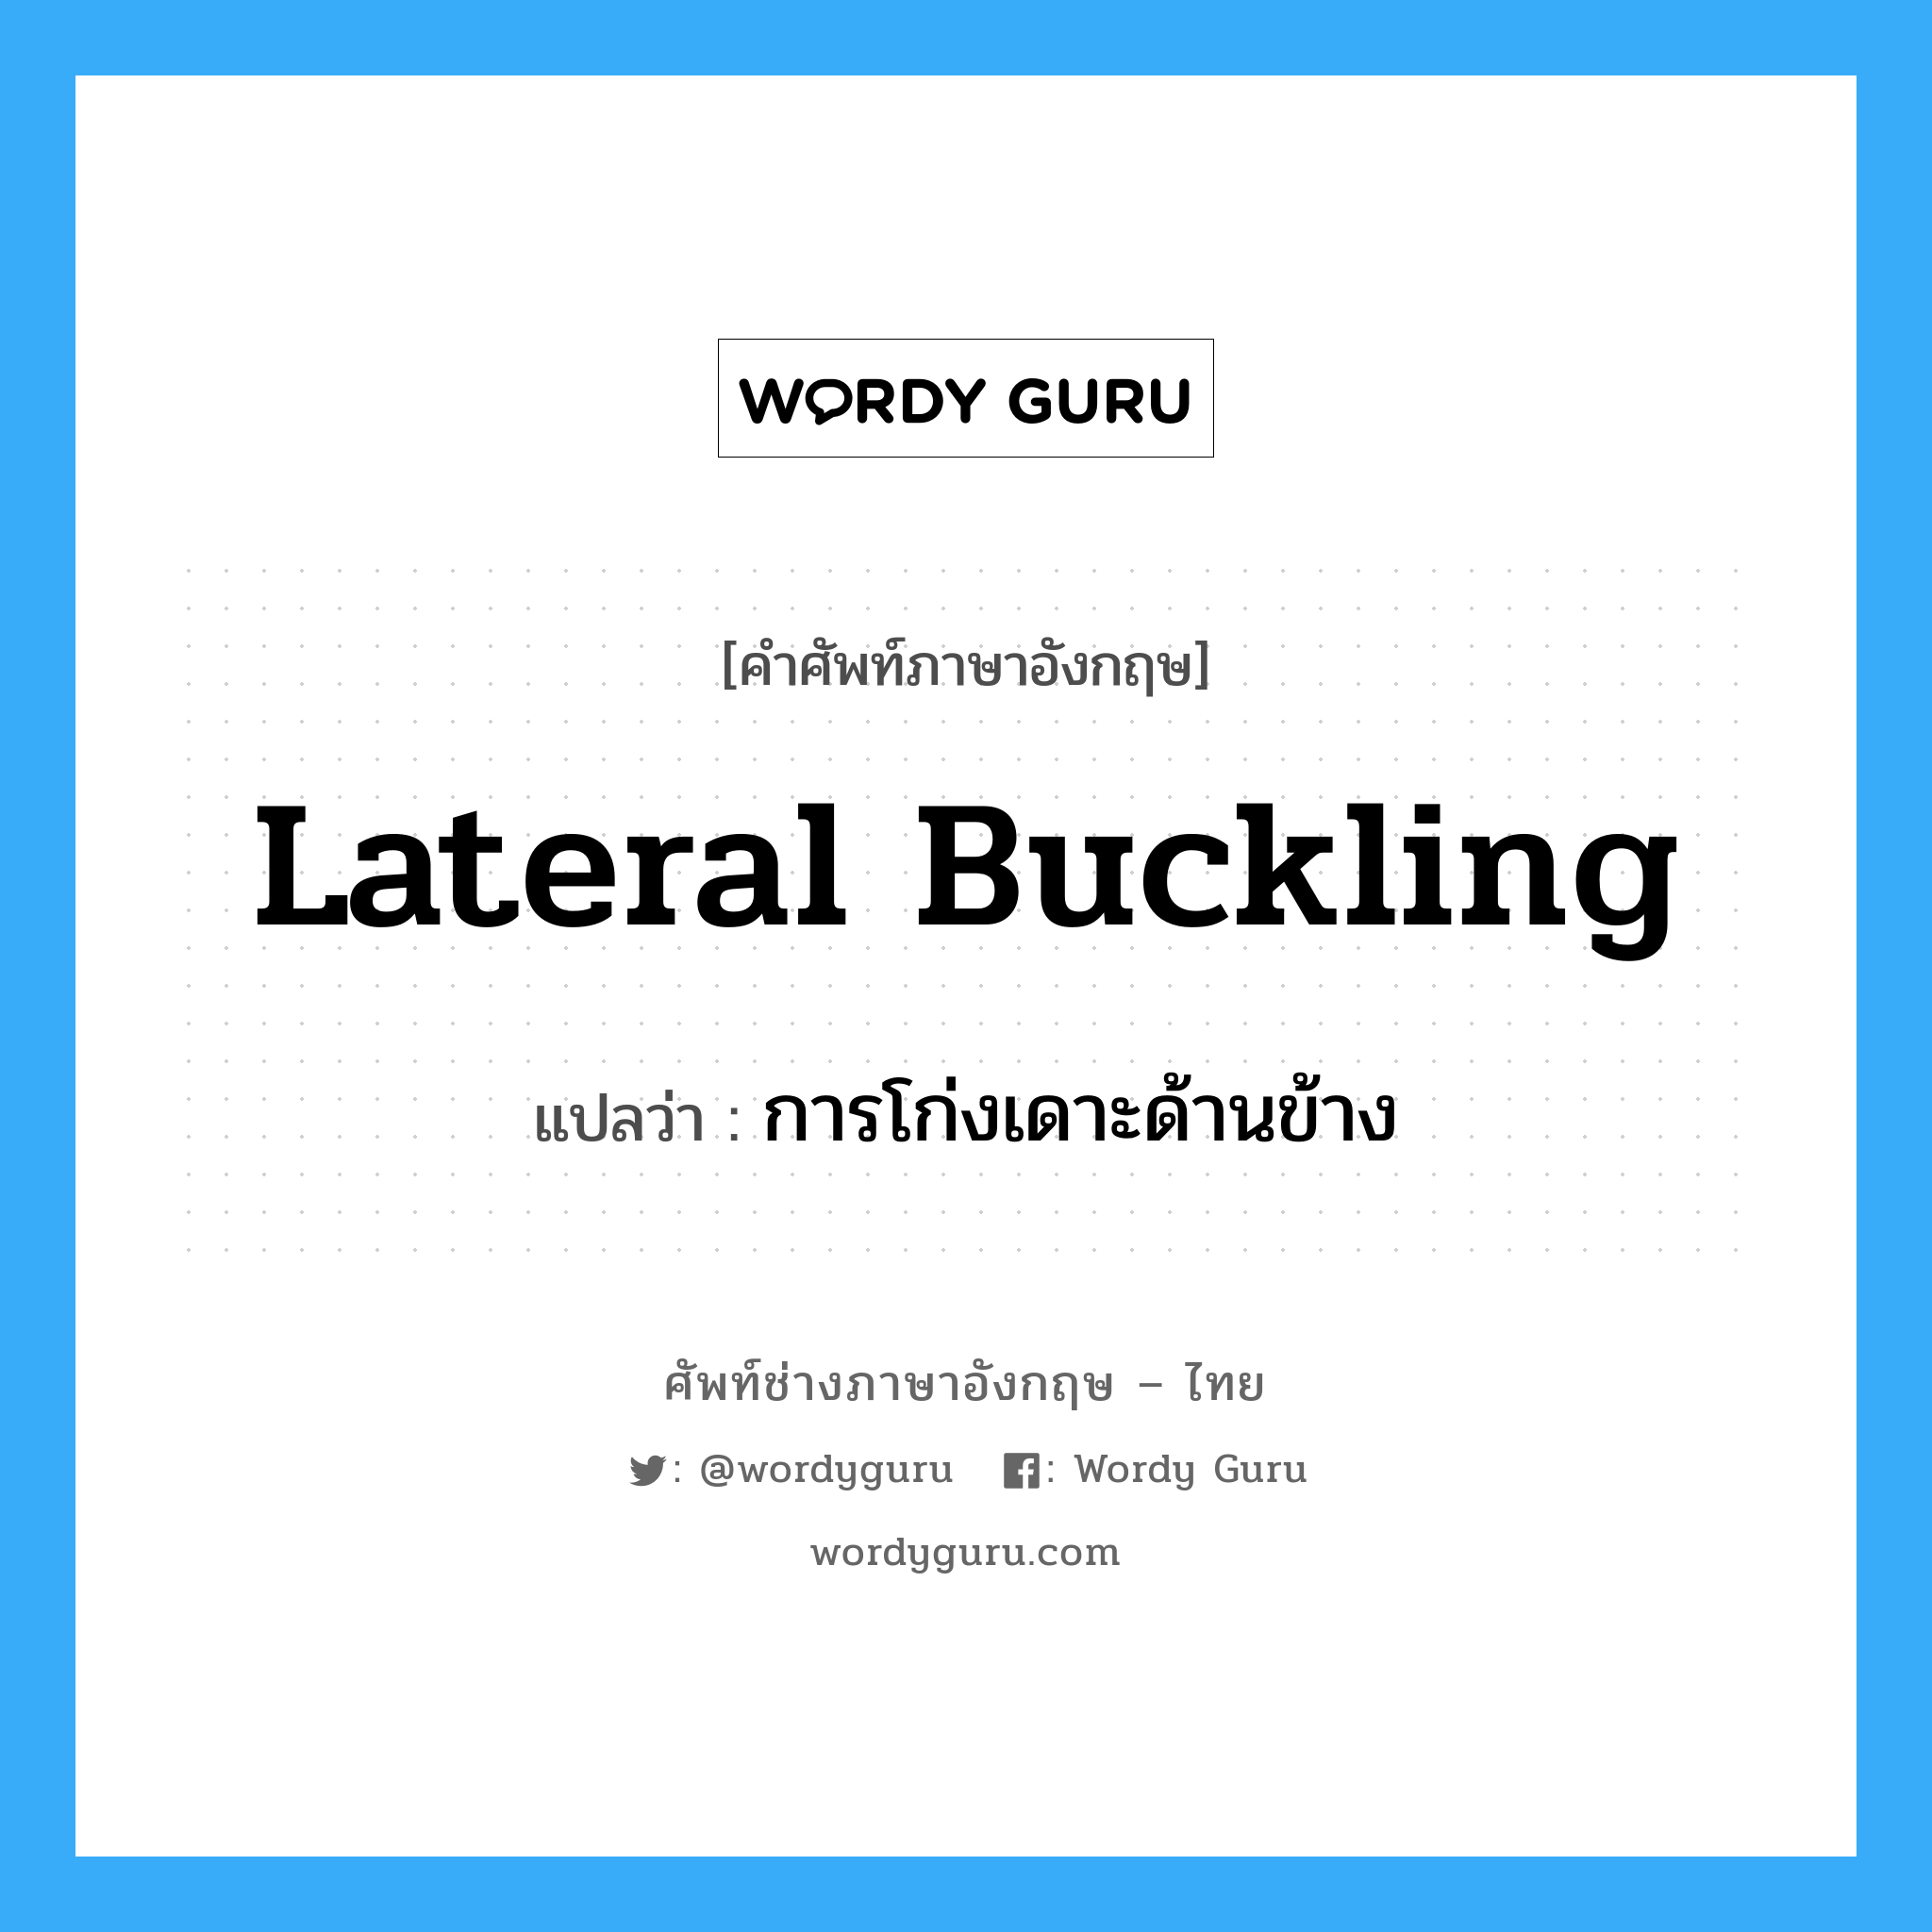 lateral buckling แปลว่า?, คำศัพท์ช่างภาษาอังกฤษ - ไทย lateral buckling คำศัพท์ภาษาอังกฤษ lateral buckling แปลว่า การโก่งเดาะด้านข้าง